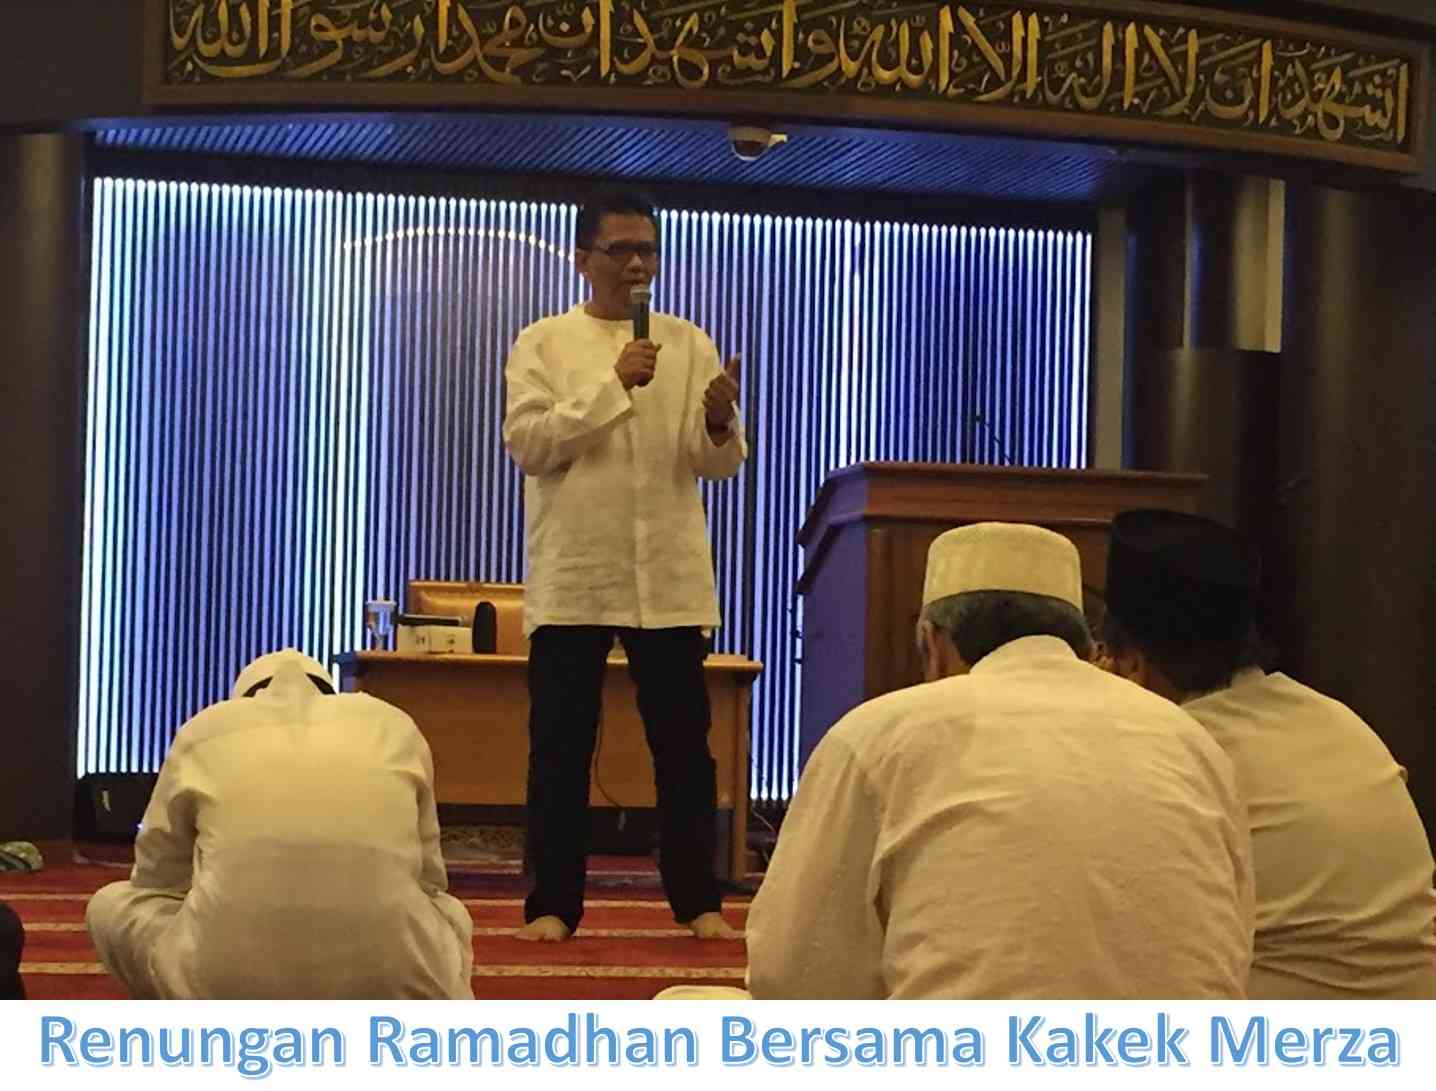 Image: Renungan Ramadhan Bersama Kakek Merza (03)